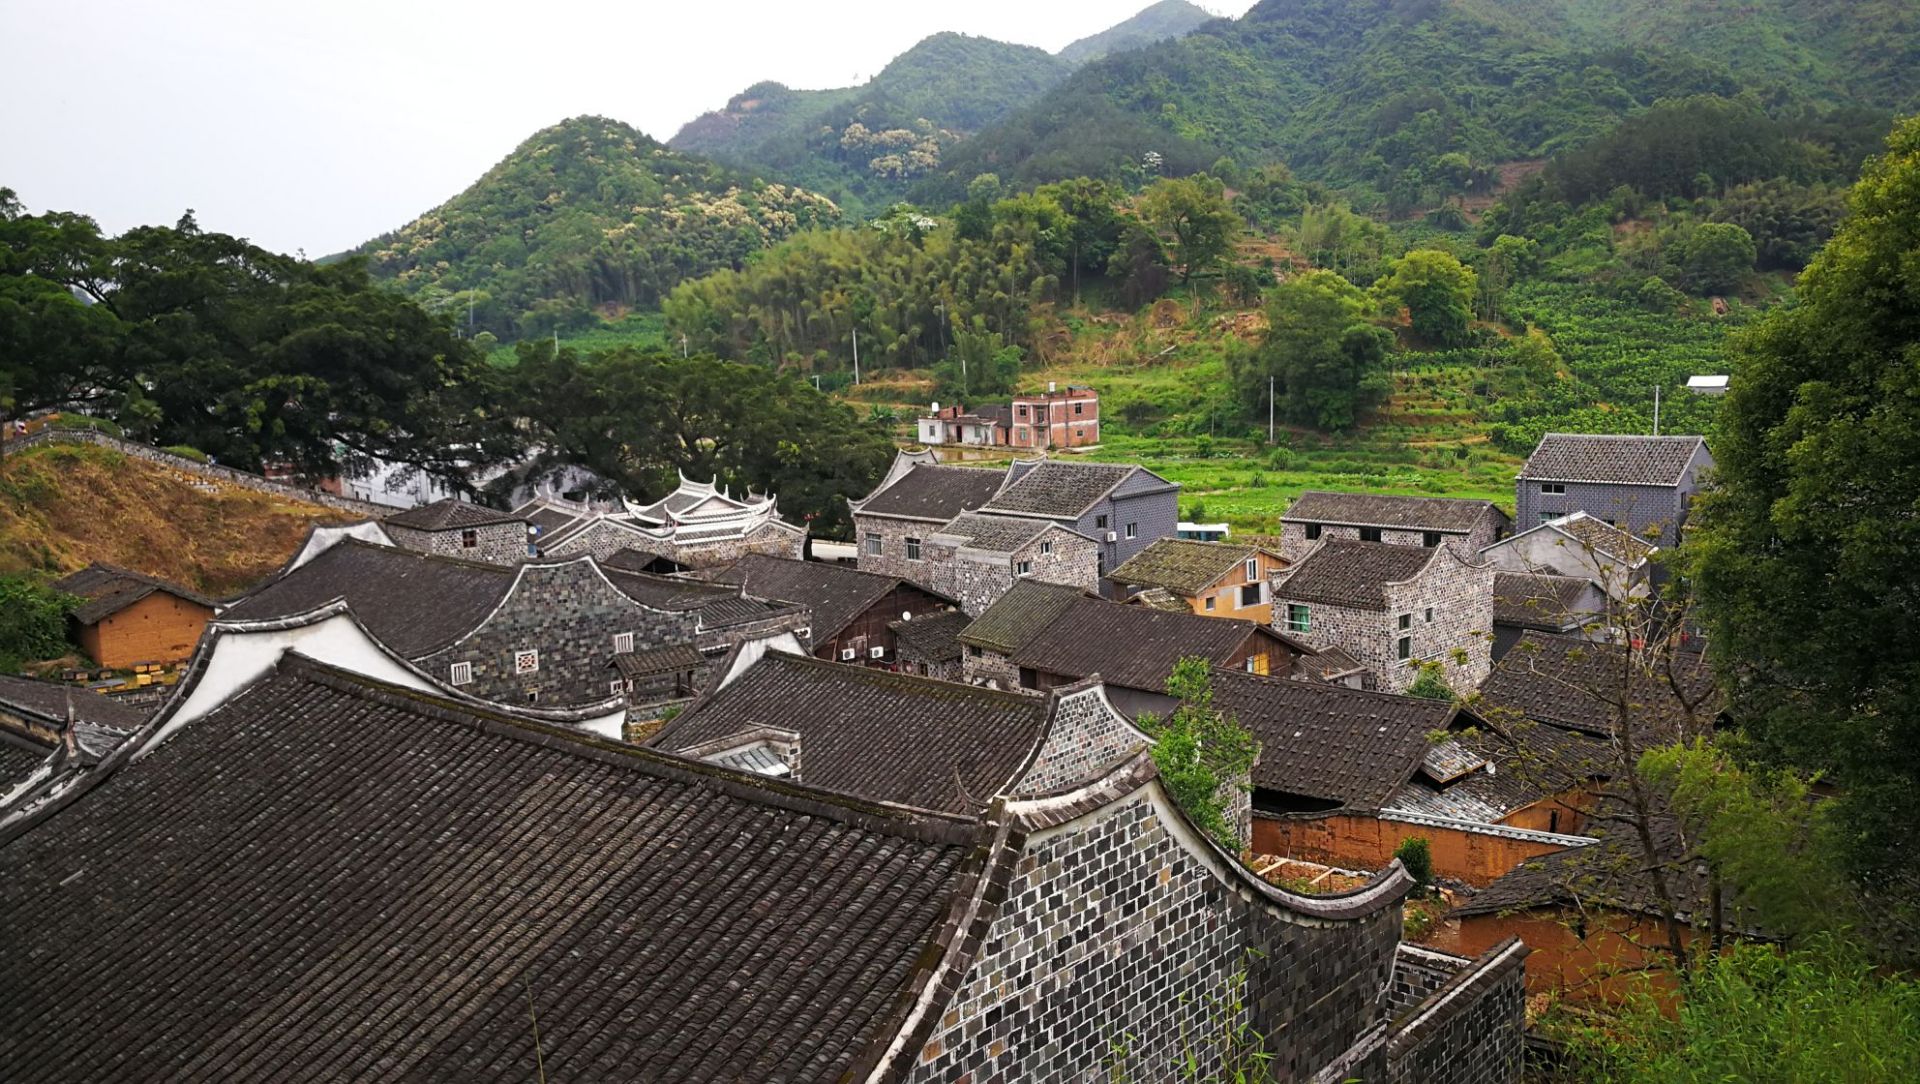 半月里村位于福建省霞浦县溪南镇,是畲族聚居的村庄.